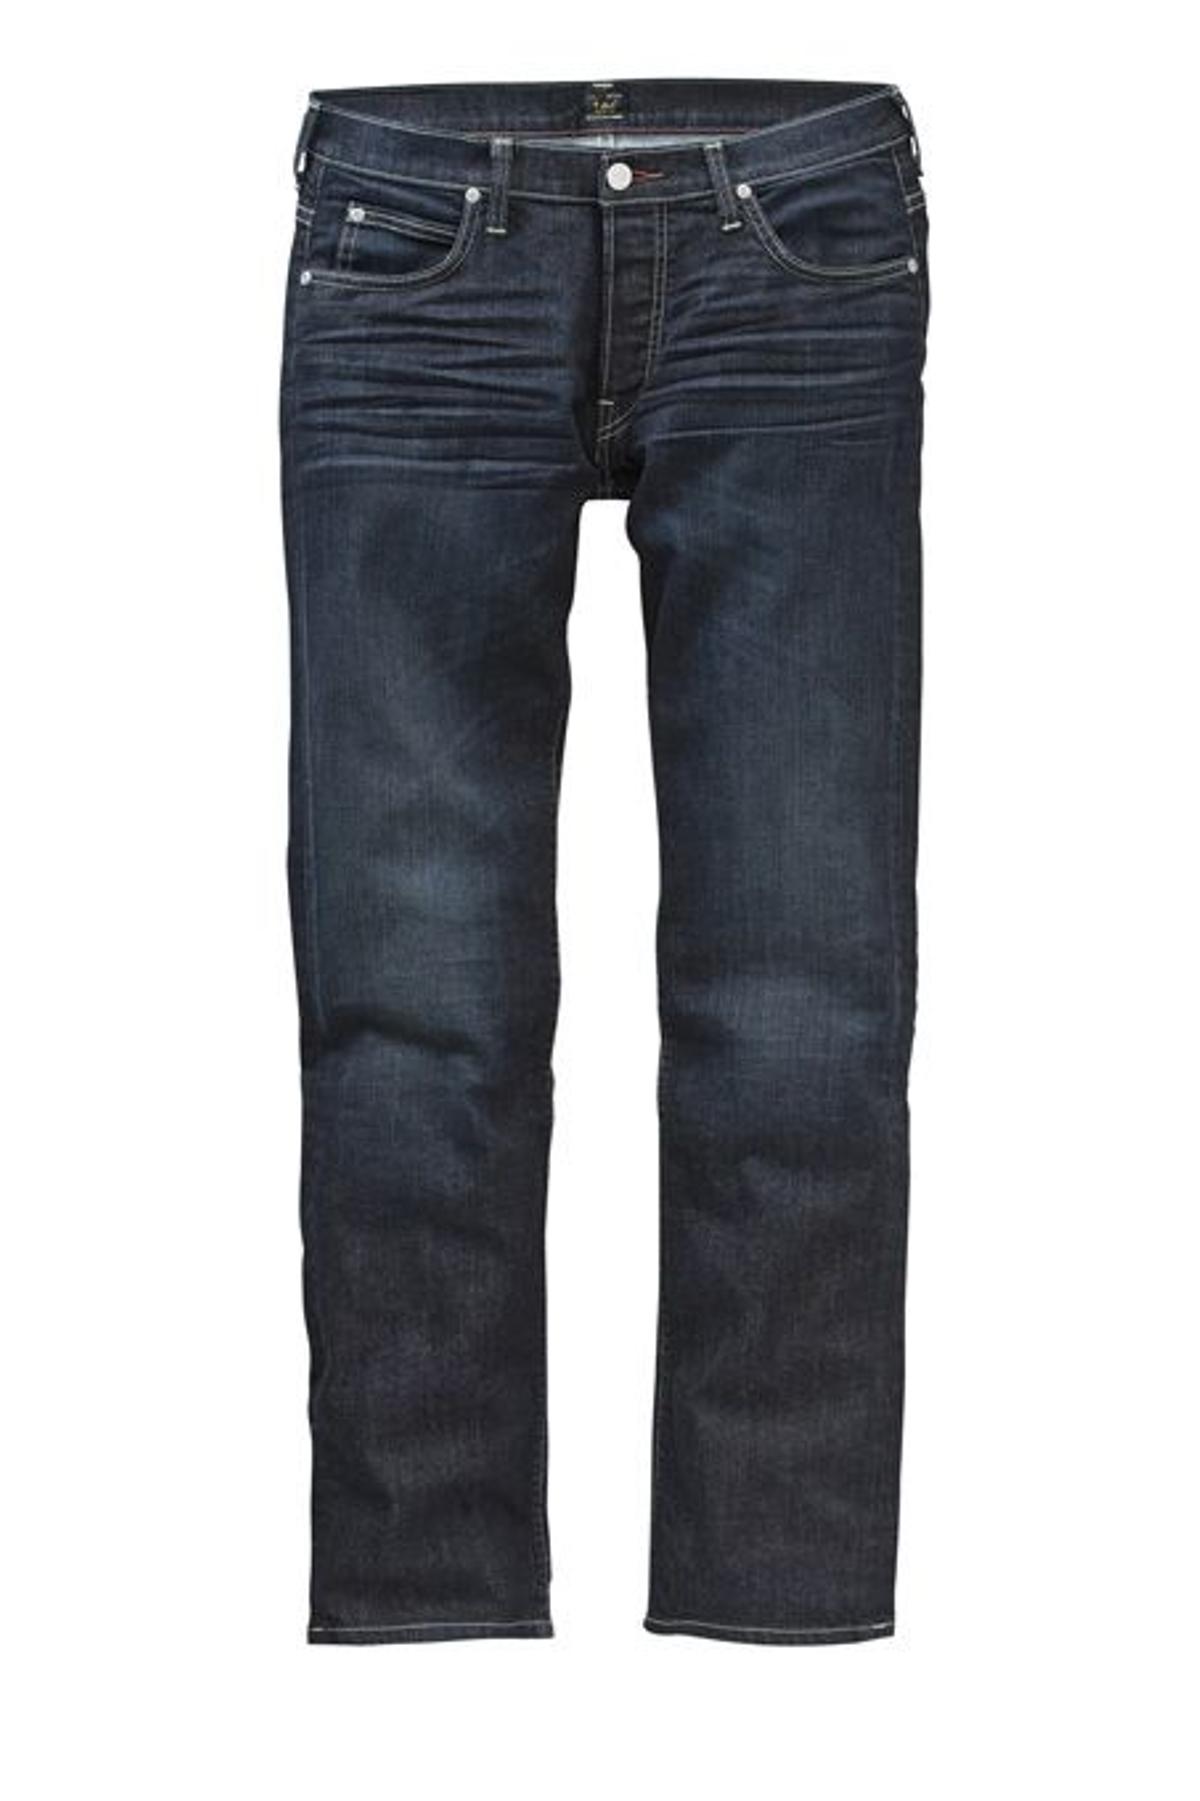 Jeans modelo Brooklyn Straight (76 €).